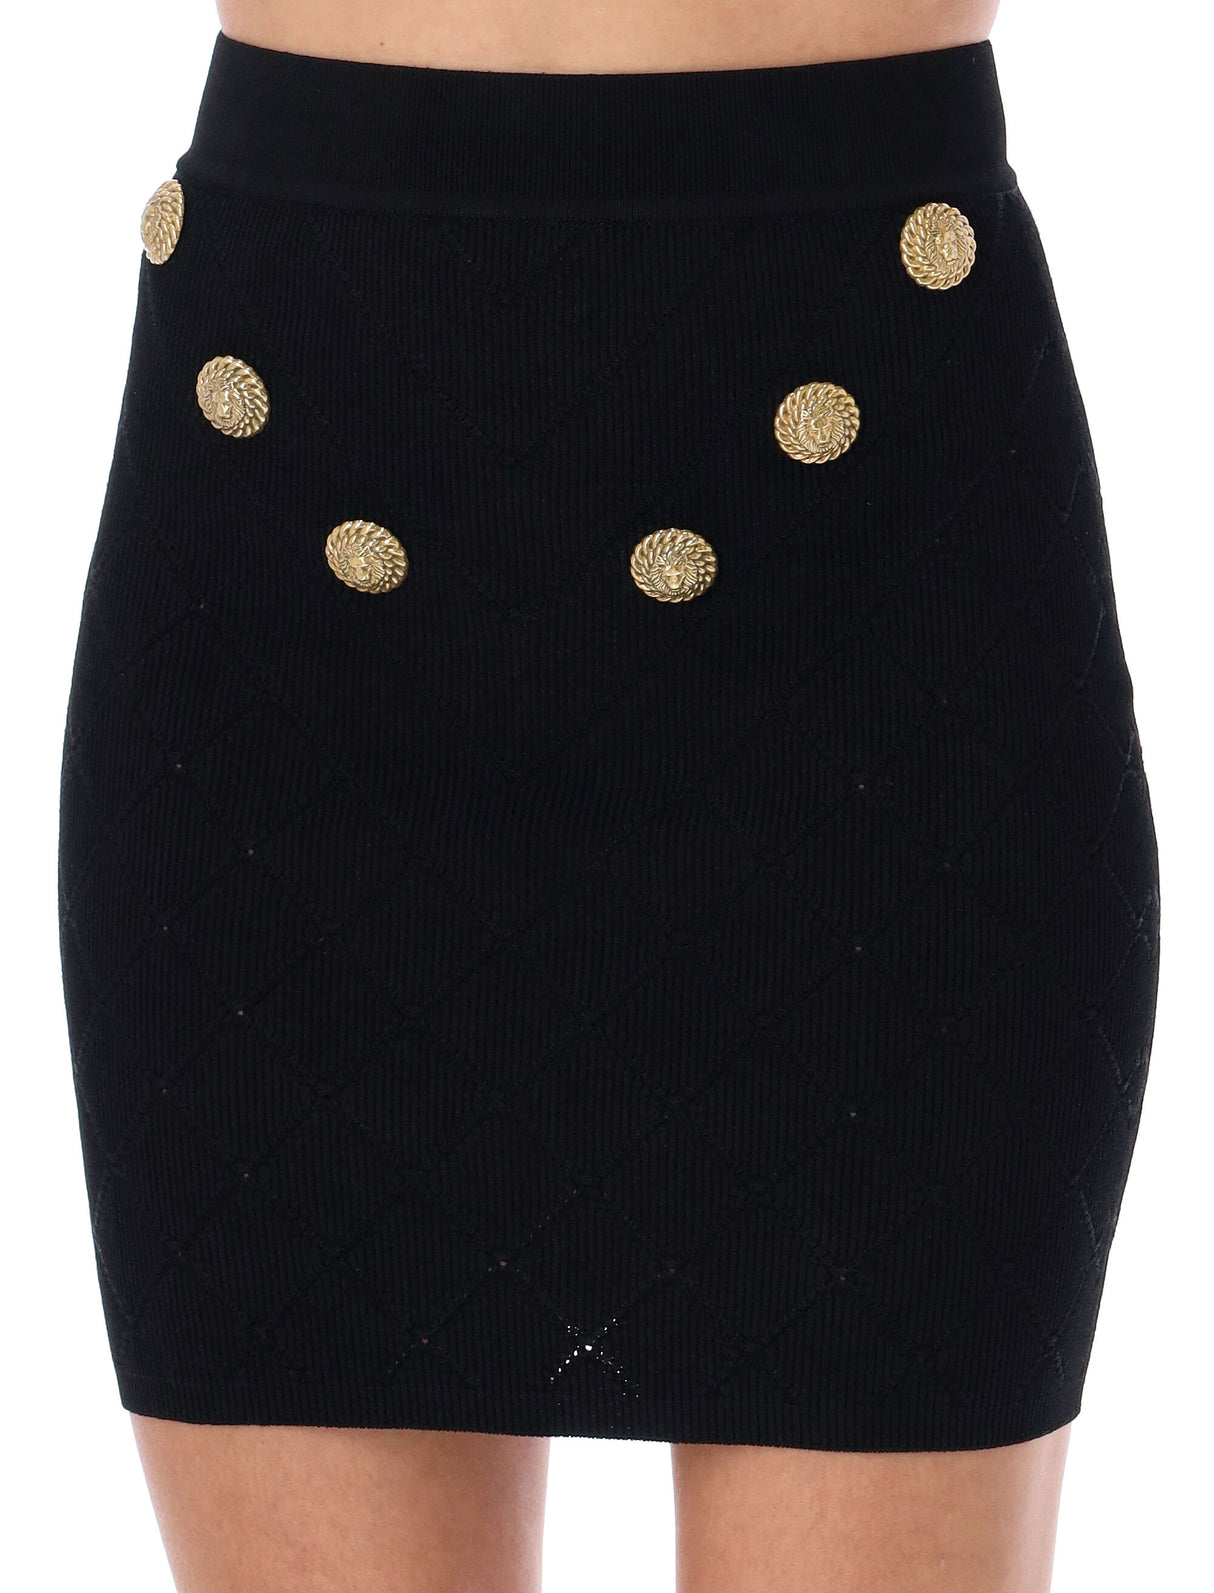 BALMAIN Sleek and Chic: 6-Button Black Knit Skirt for Women